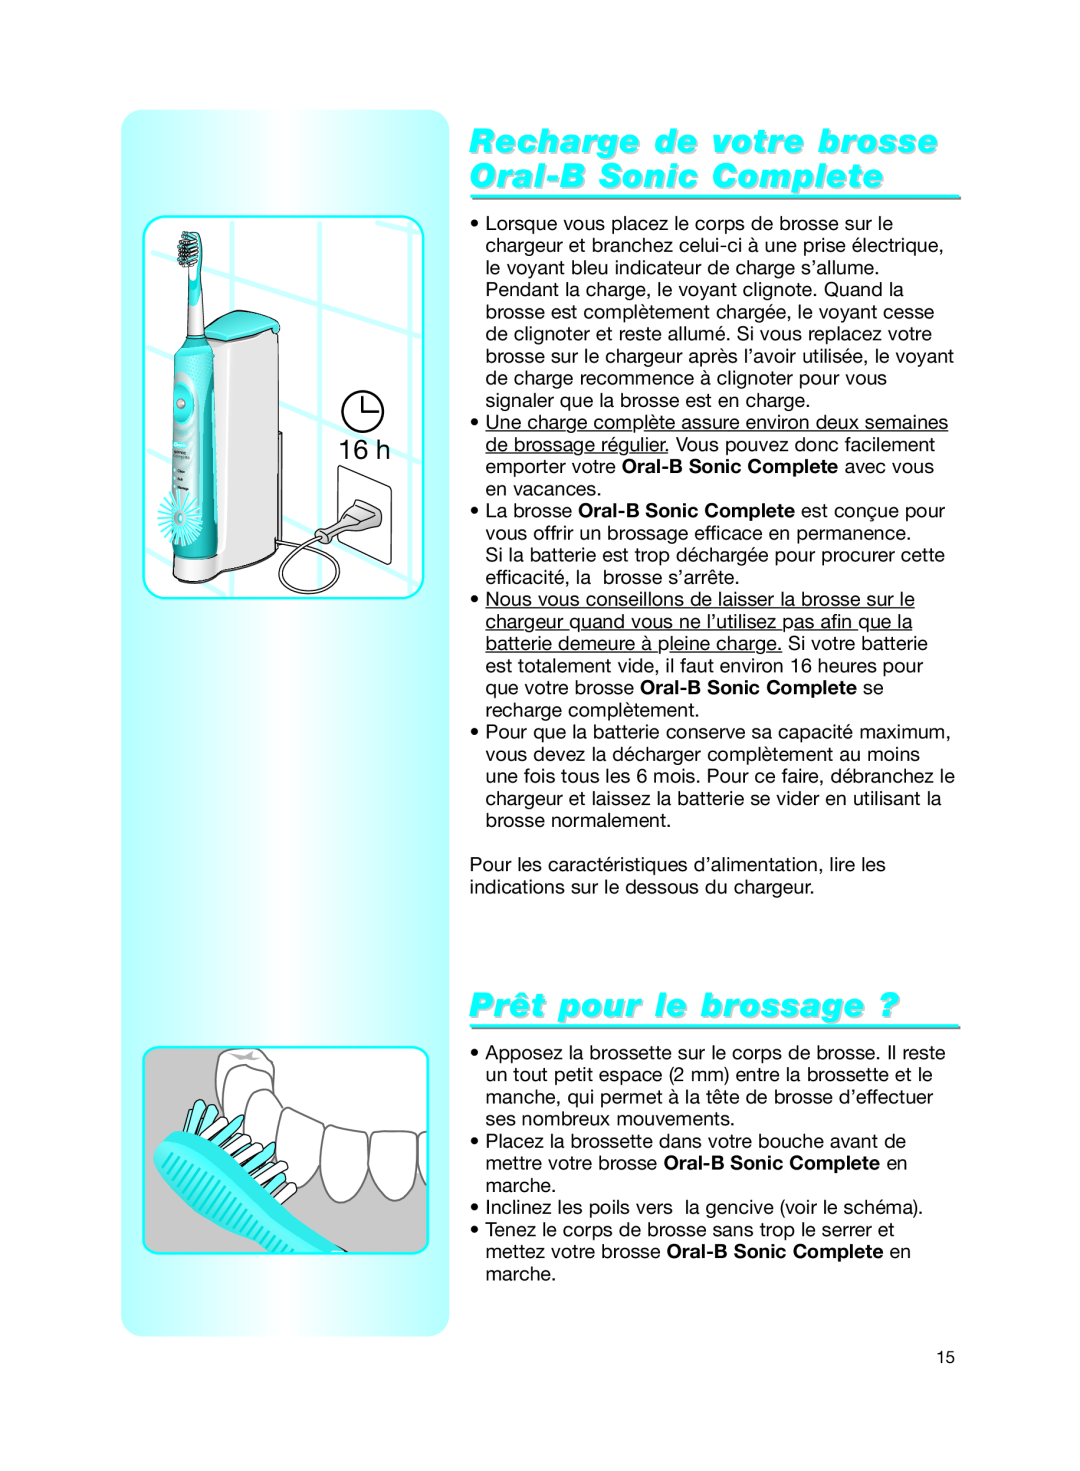 Braun manual Recharge de votre brosse Oral-B Sonic Complete, Prêt pour le brossage ? 